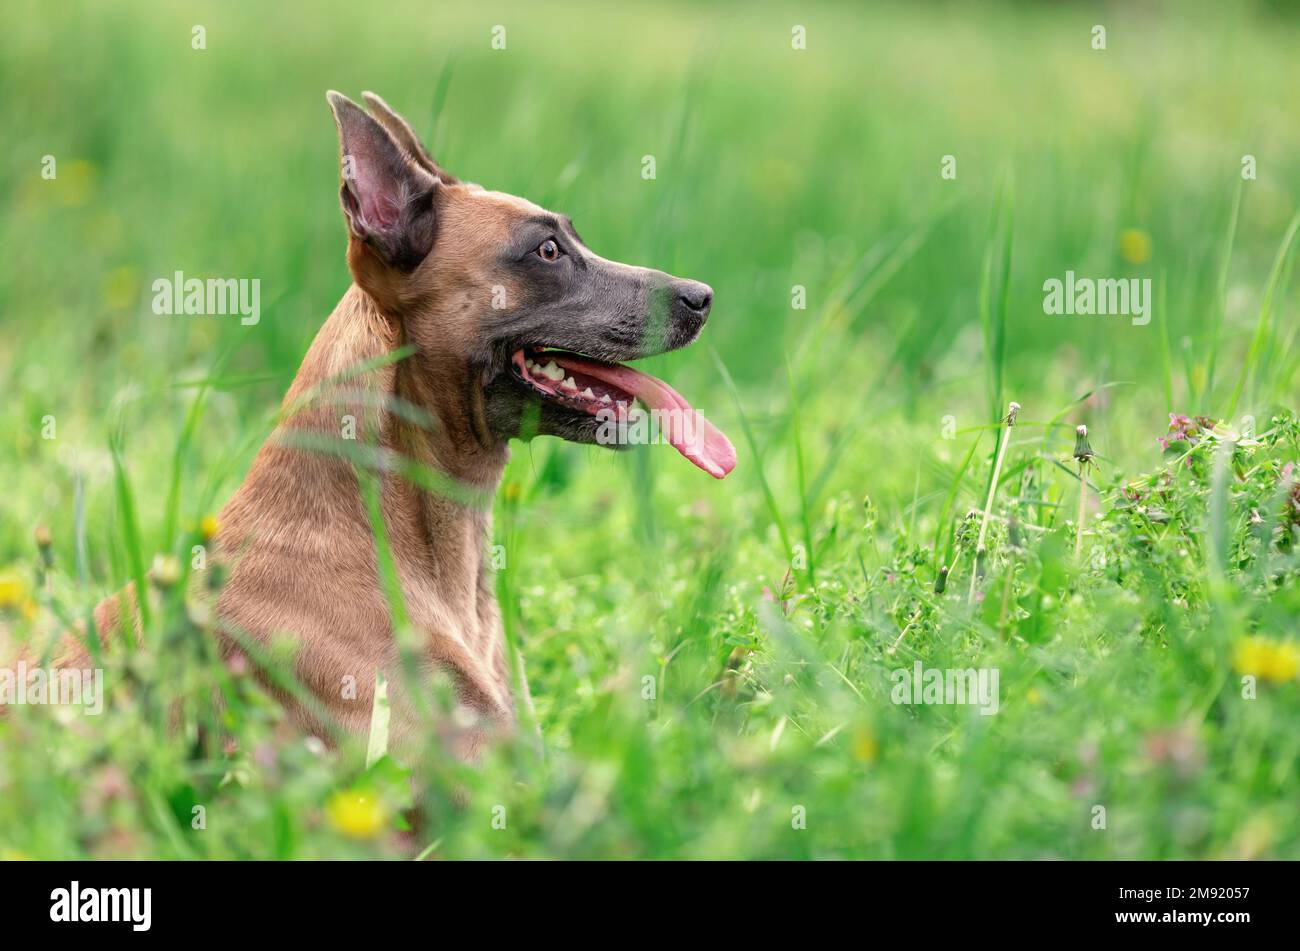 Divertente cane sorridente di razza belga malinois sdraiato in erba Foto Stock